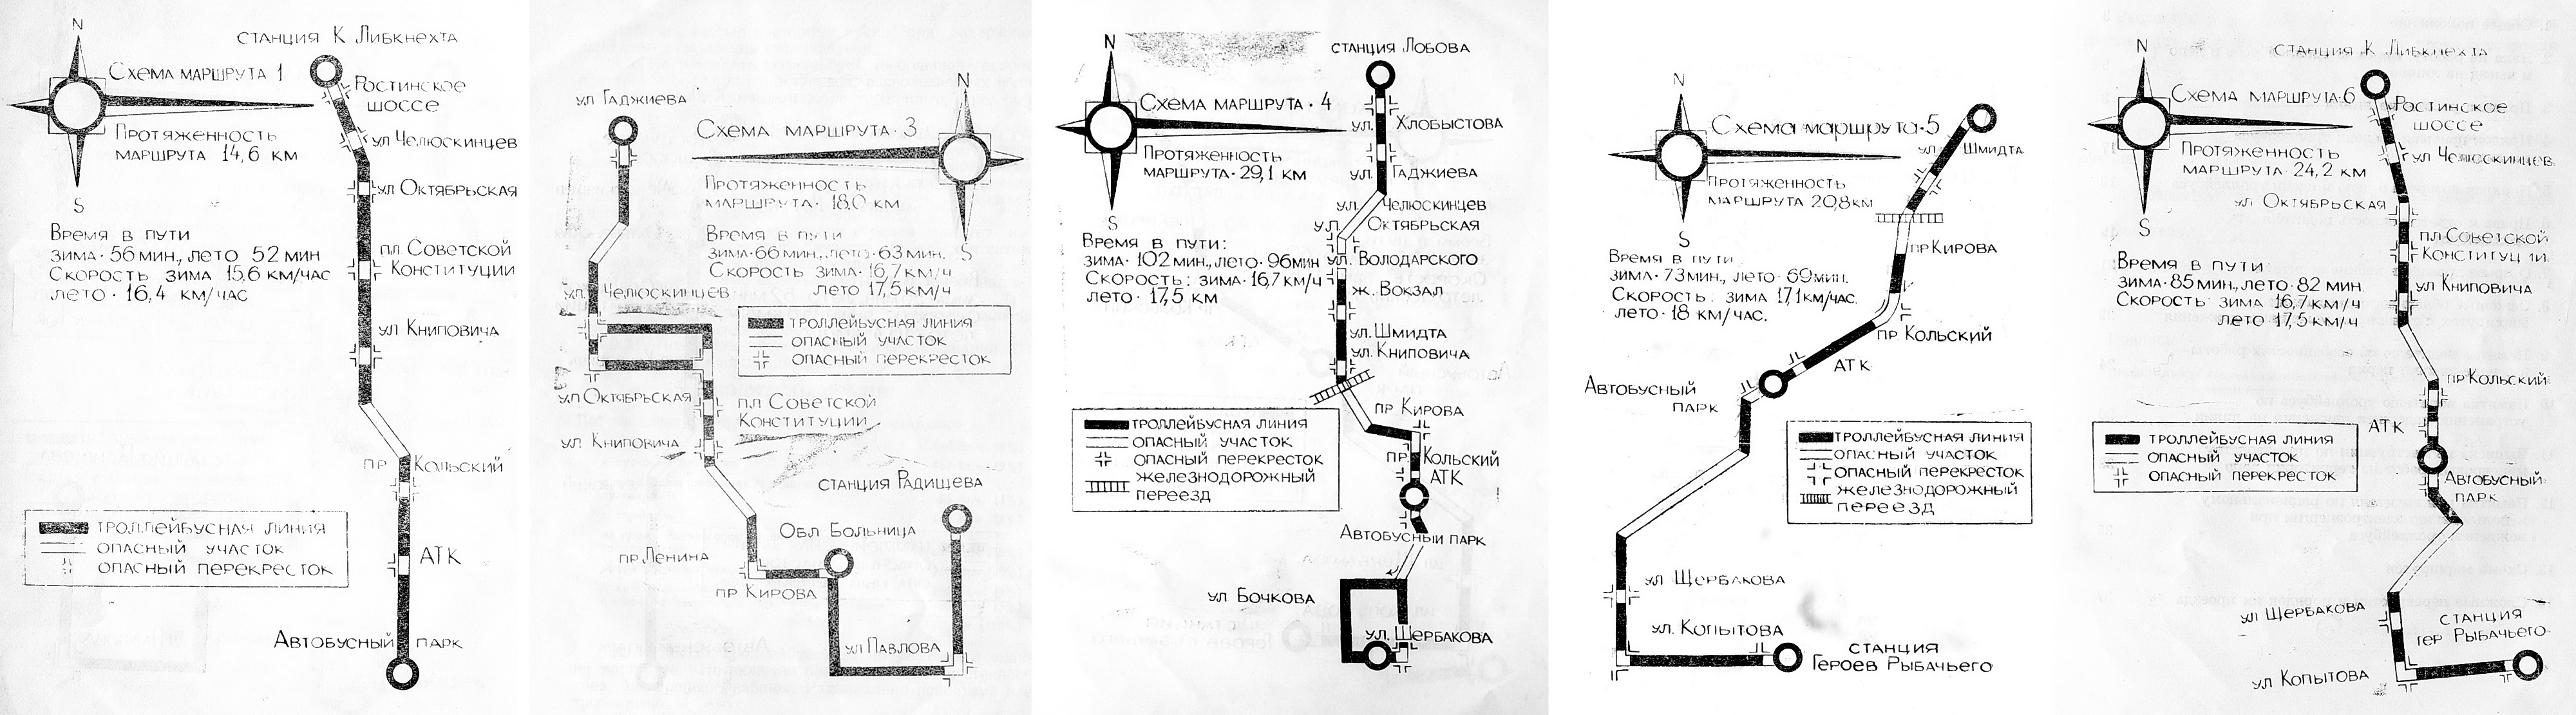 Murmansk — Maps